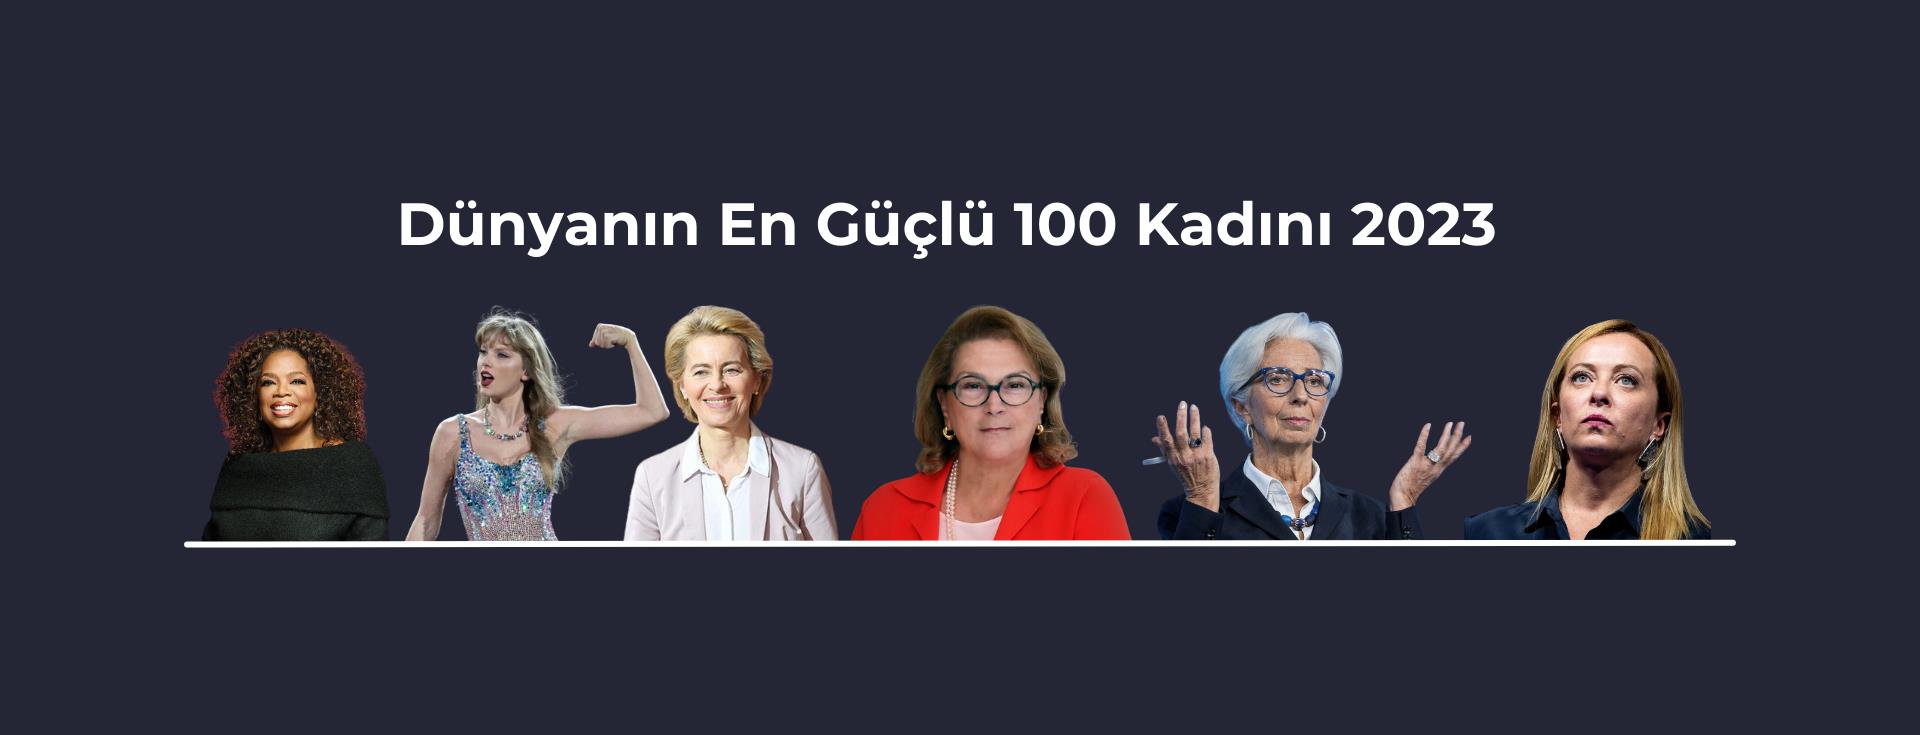 Dünyanın En Güçlü 100 Kadını 2023